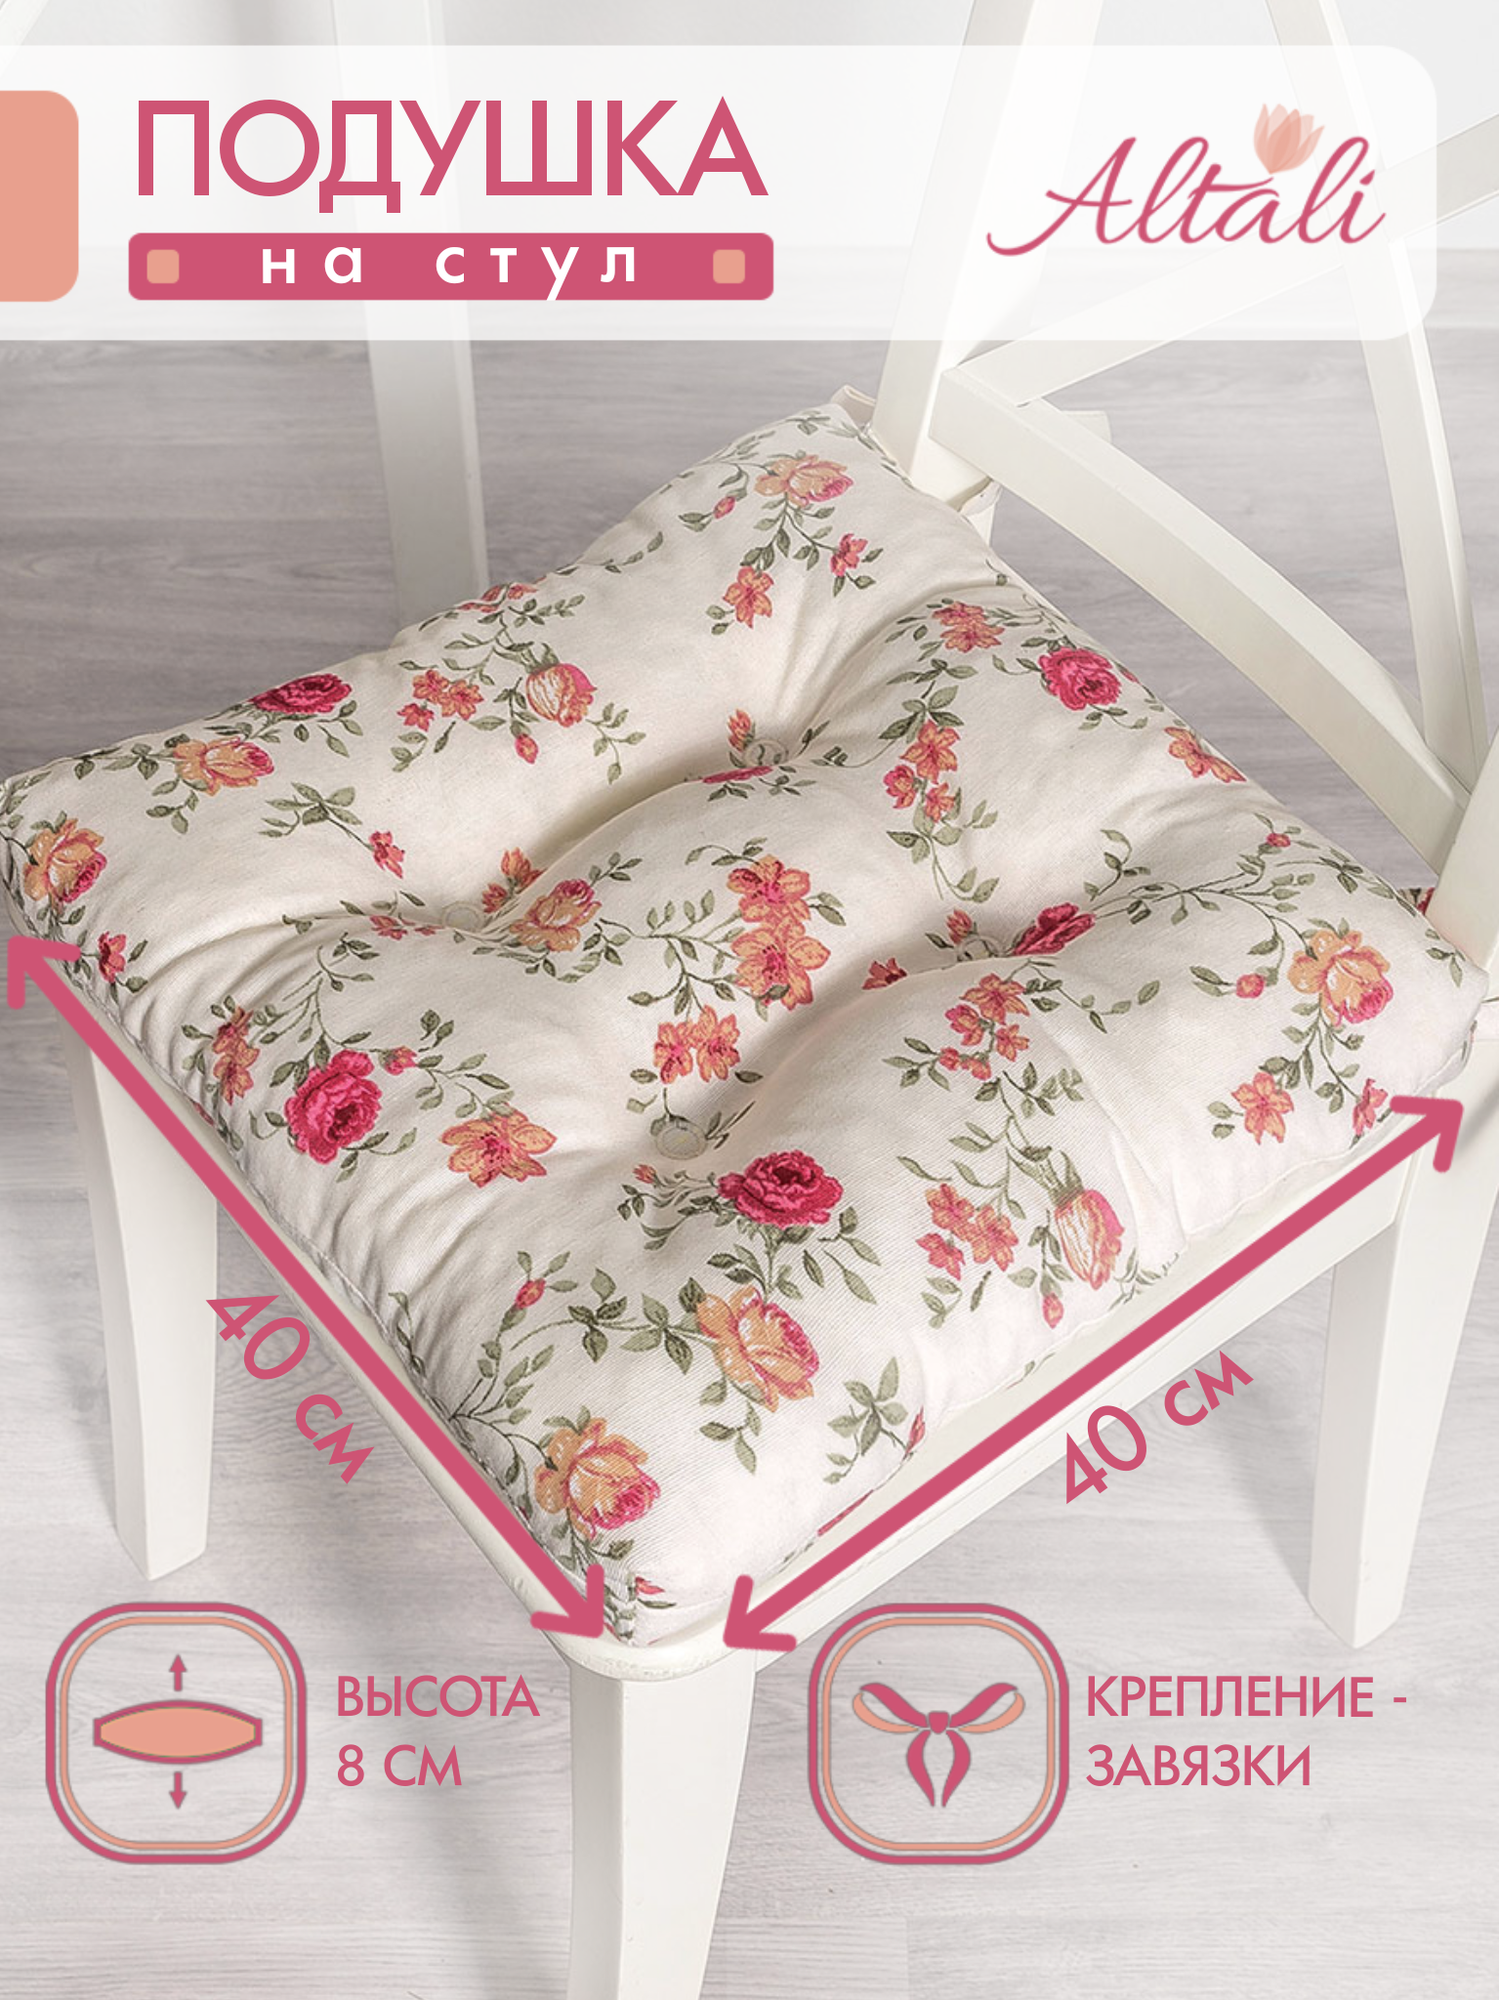 Подушка на стул /40*40 см /на завязках / ткань хлопок /для кухни зала гостиной беседки/ цветы / Altali